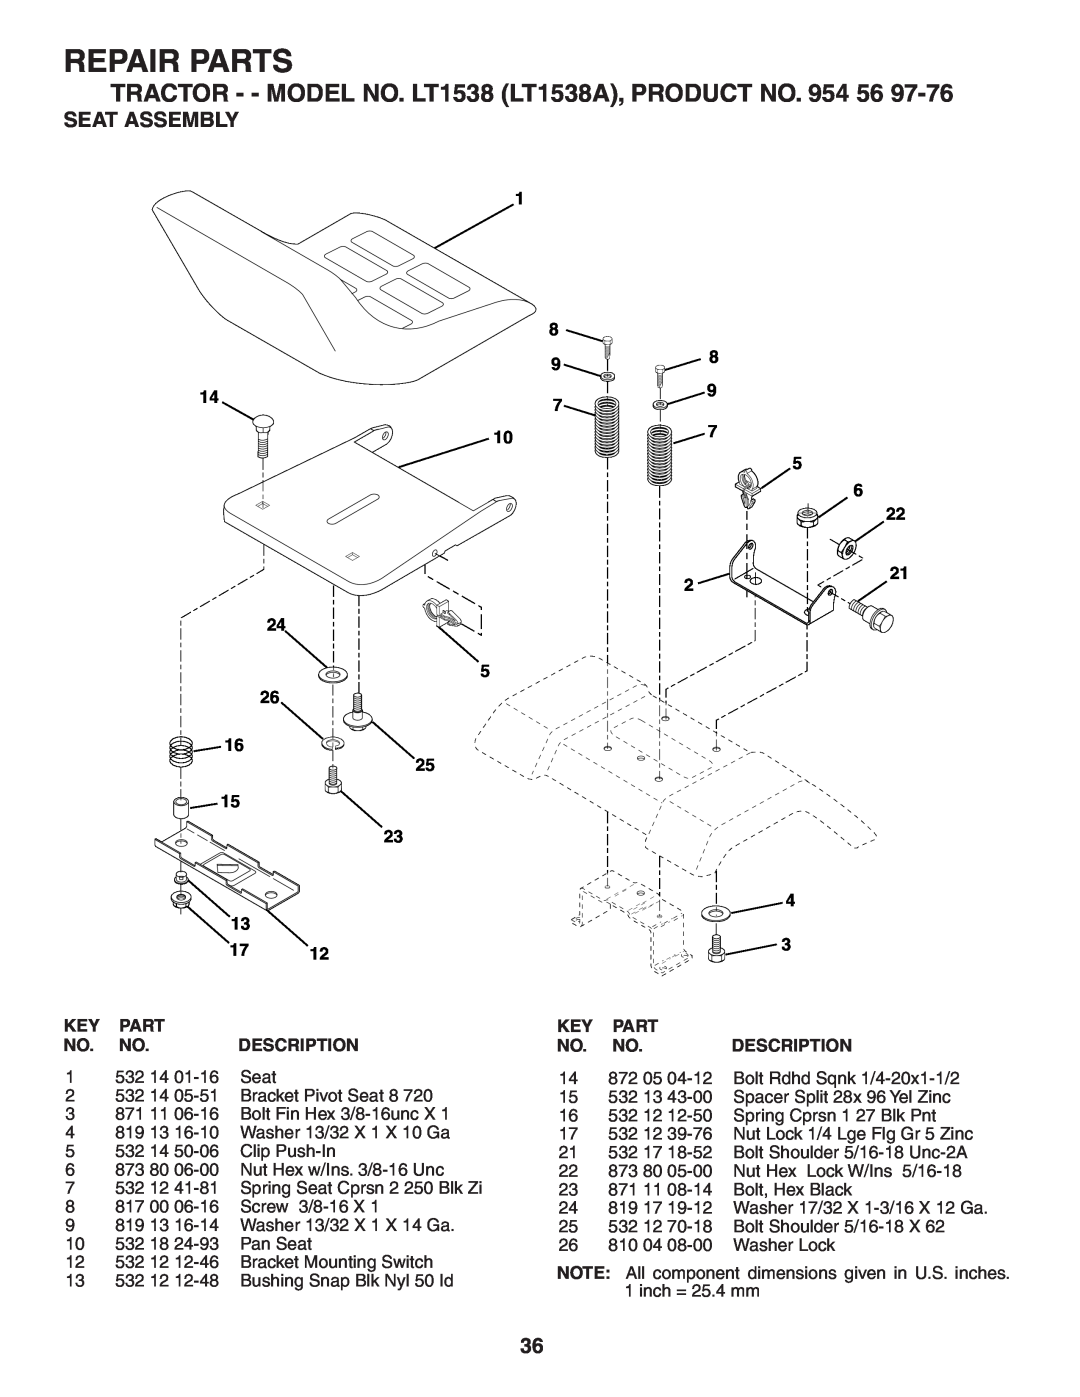 Husqvarna Seat Assembly, Repair Parts, TRACTOR - - MODEL NO. LT1538 LT1538A, PRODUCT NO. 954 56, Description, 532 14 